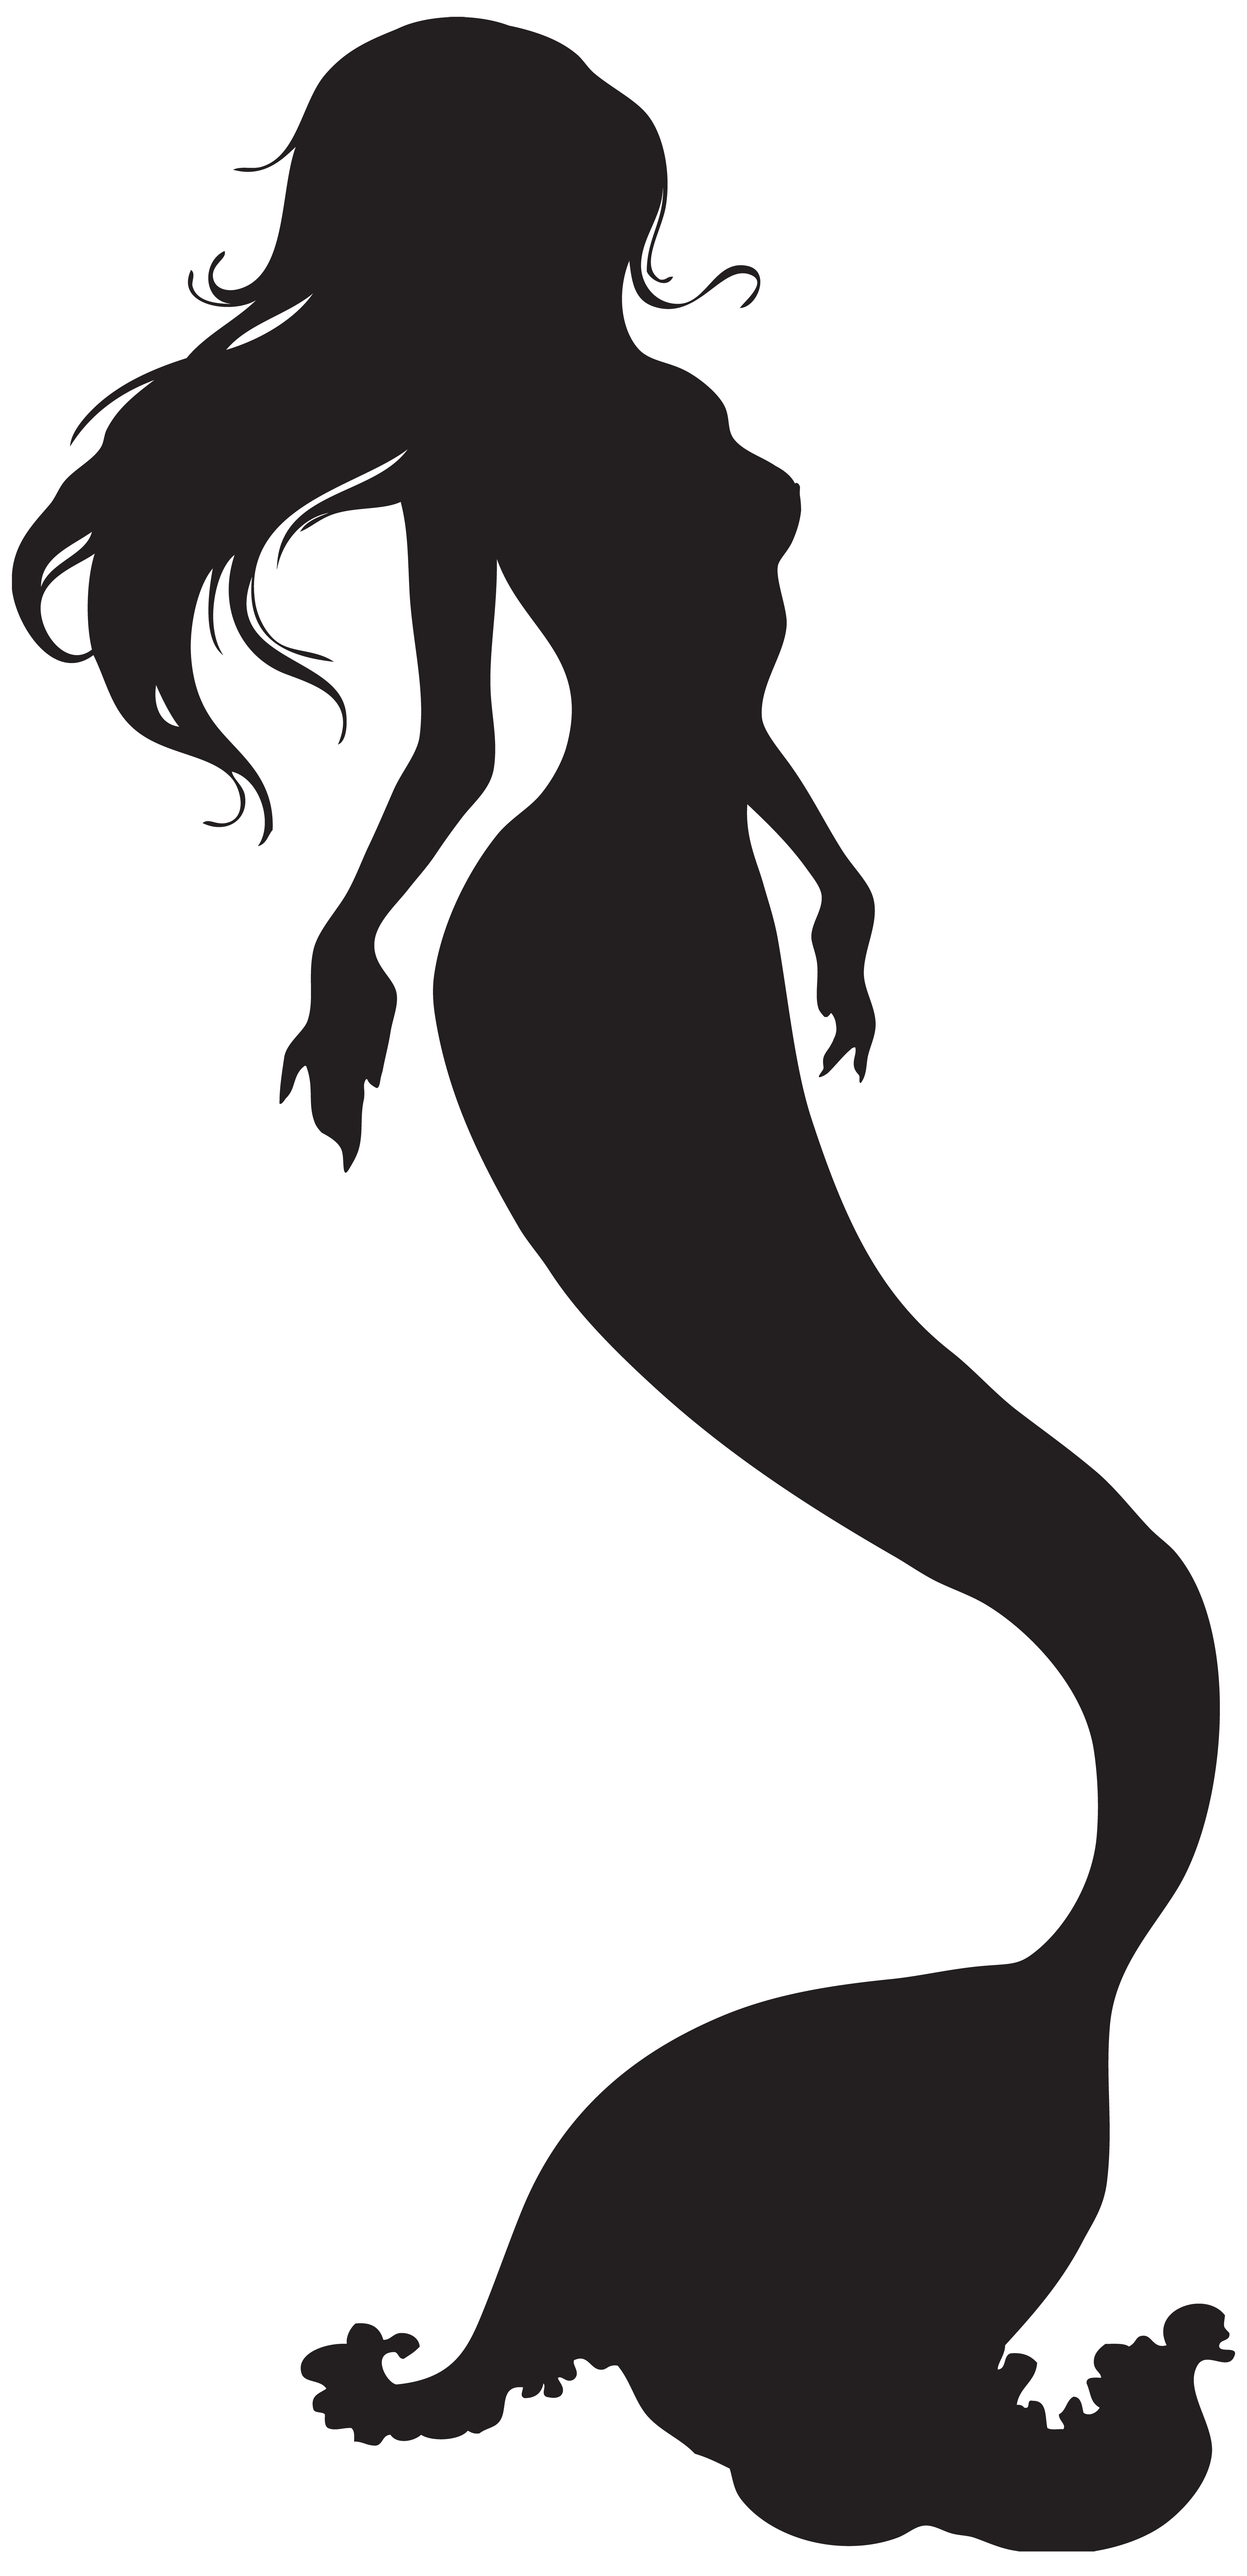 Mermaid Silhouette Clip art - Mermaid png download - 3874*8000 - Free ...